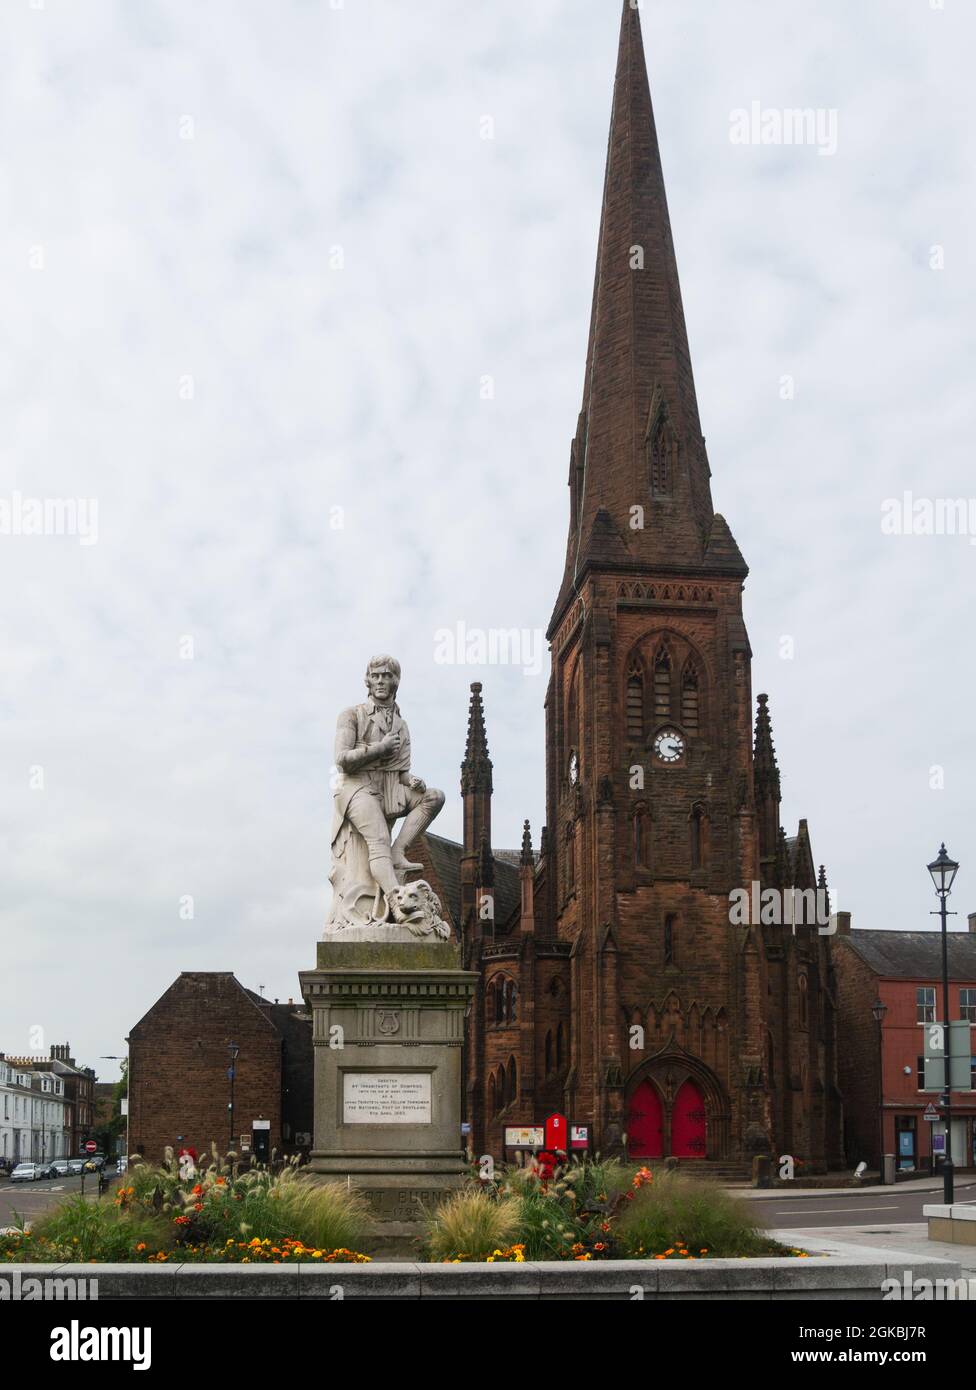 Statue de Robert Burns devant l'église Greyfriars ville de Dumfries Dumfries et Galloway Scotland poète national 1759 - 1796 Banque D'Images